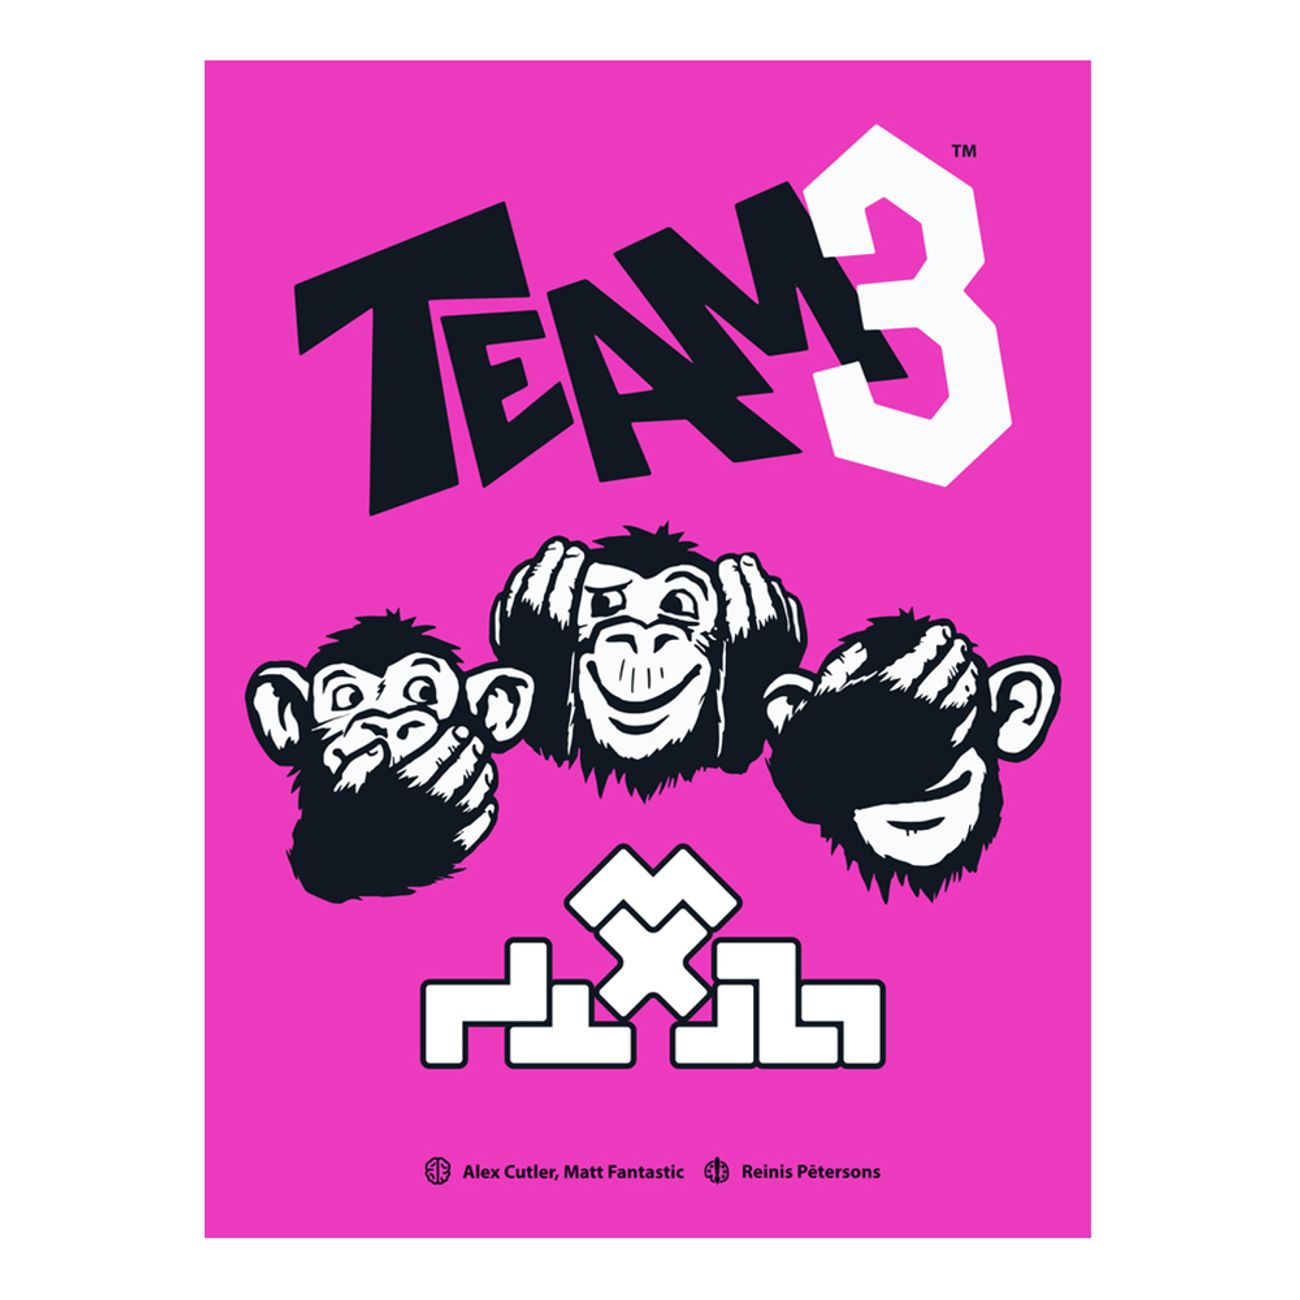 team-3-spel-3